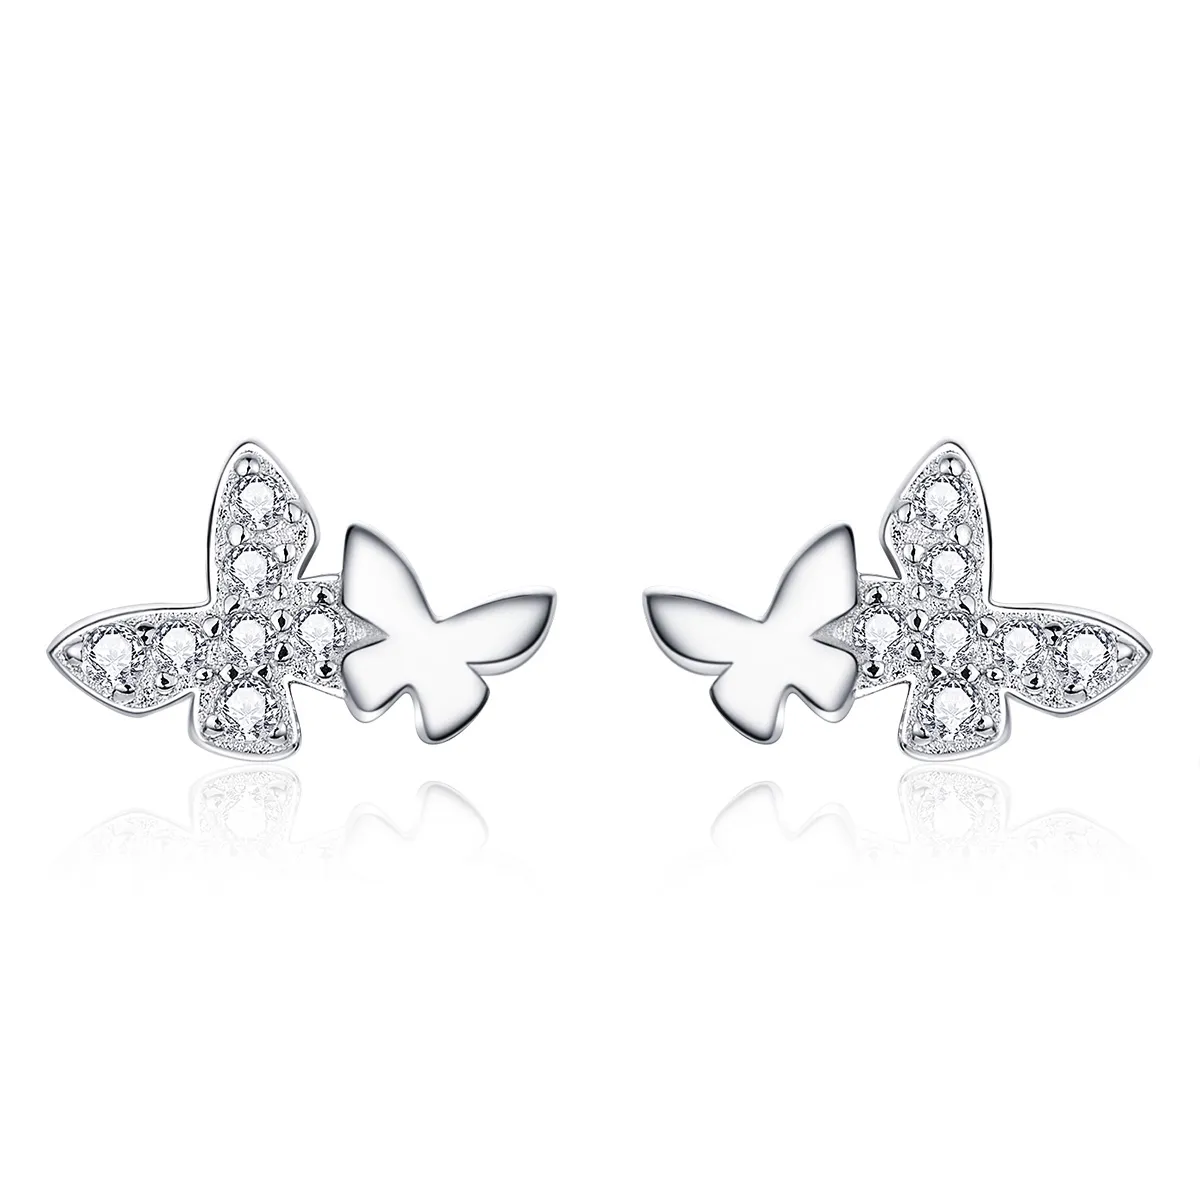 Cercei Tip Pandora cu Fluture din argint - BSE236